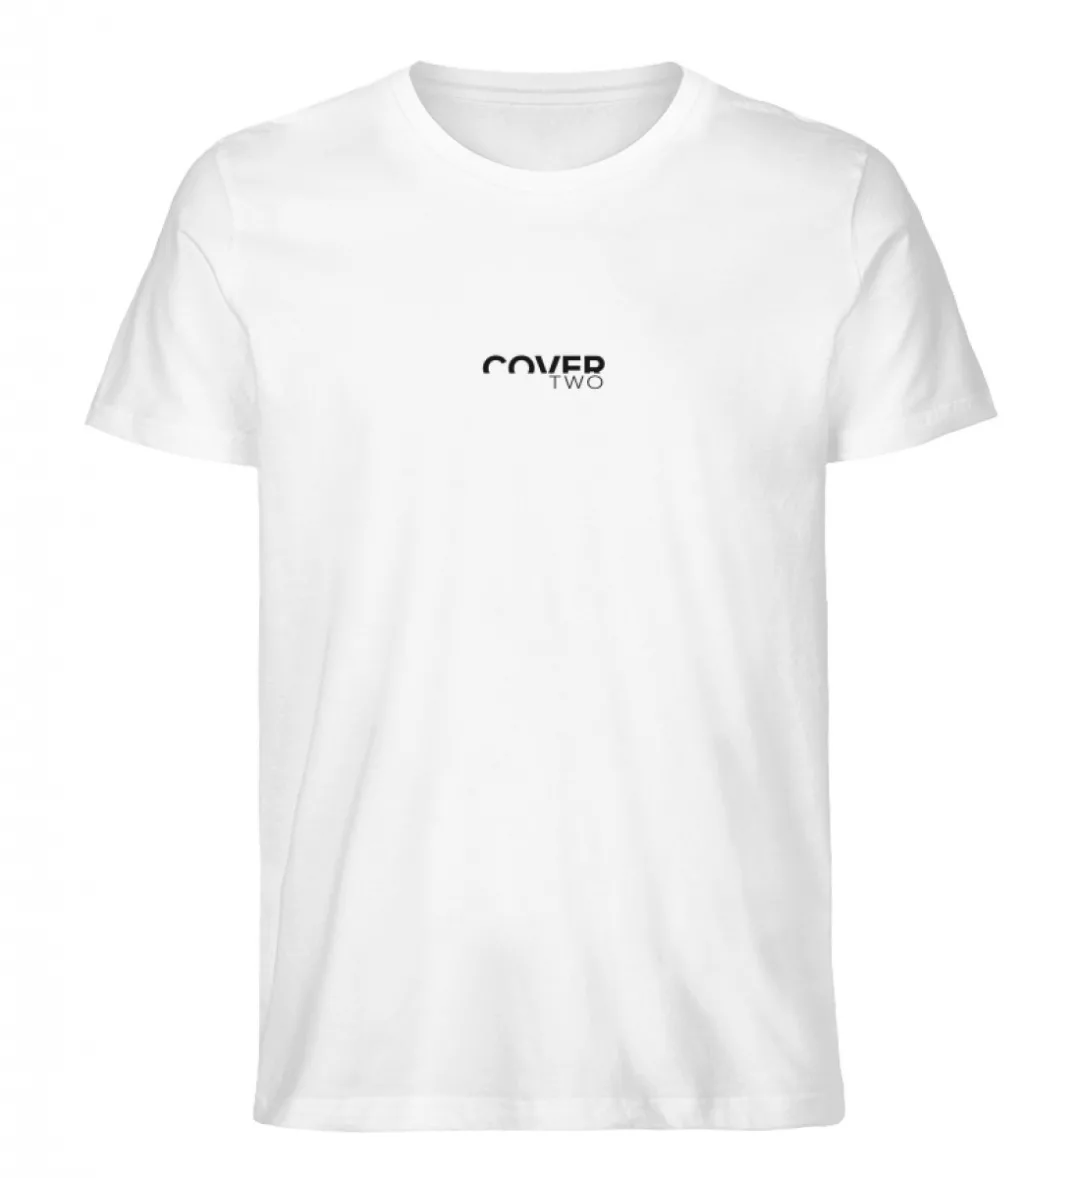 New Legacy Between The White Lines Shirt W - Herren Premium Organic Shirt-3